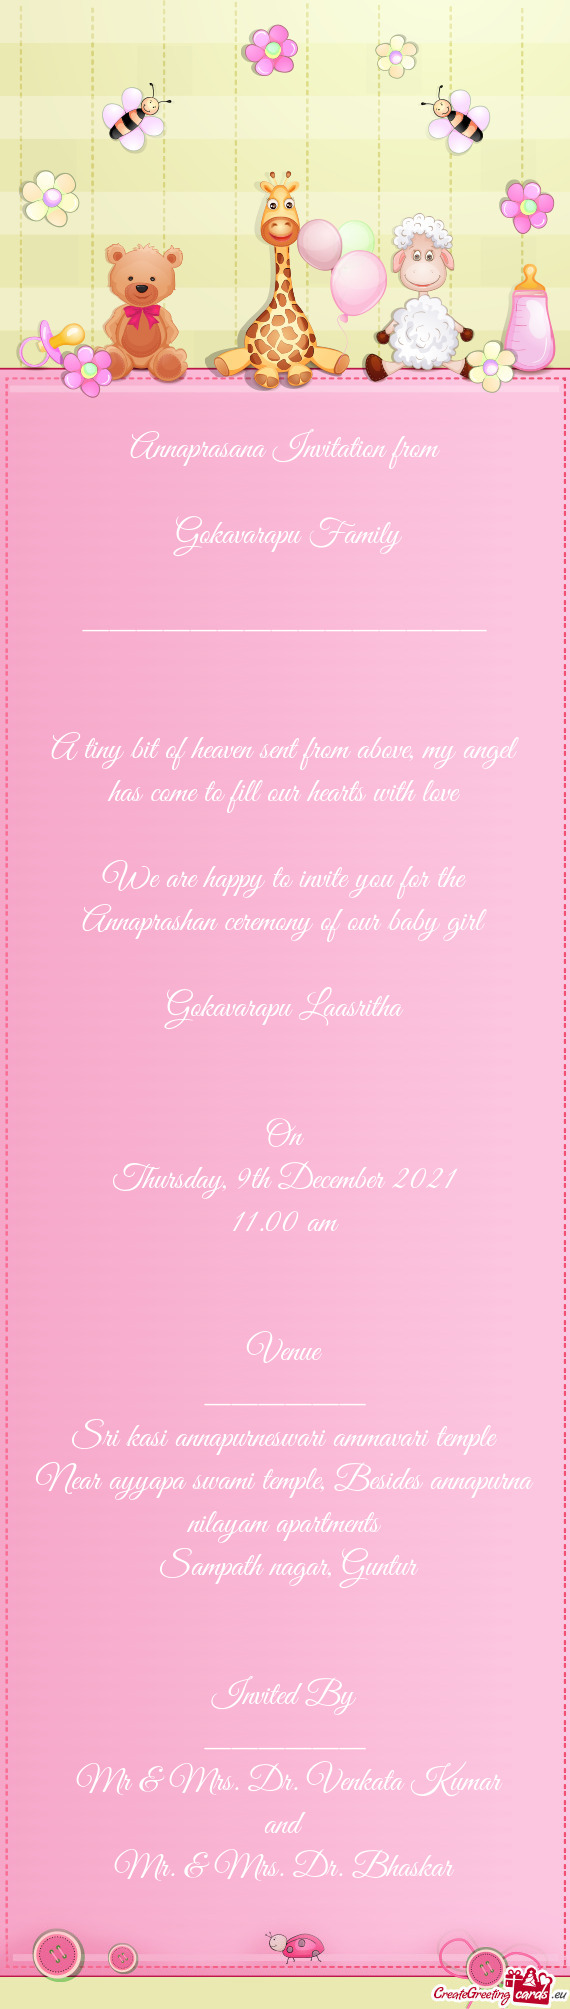 Annaprasana Invitation from